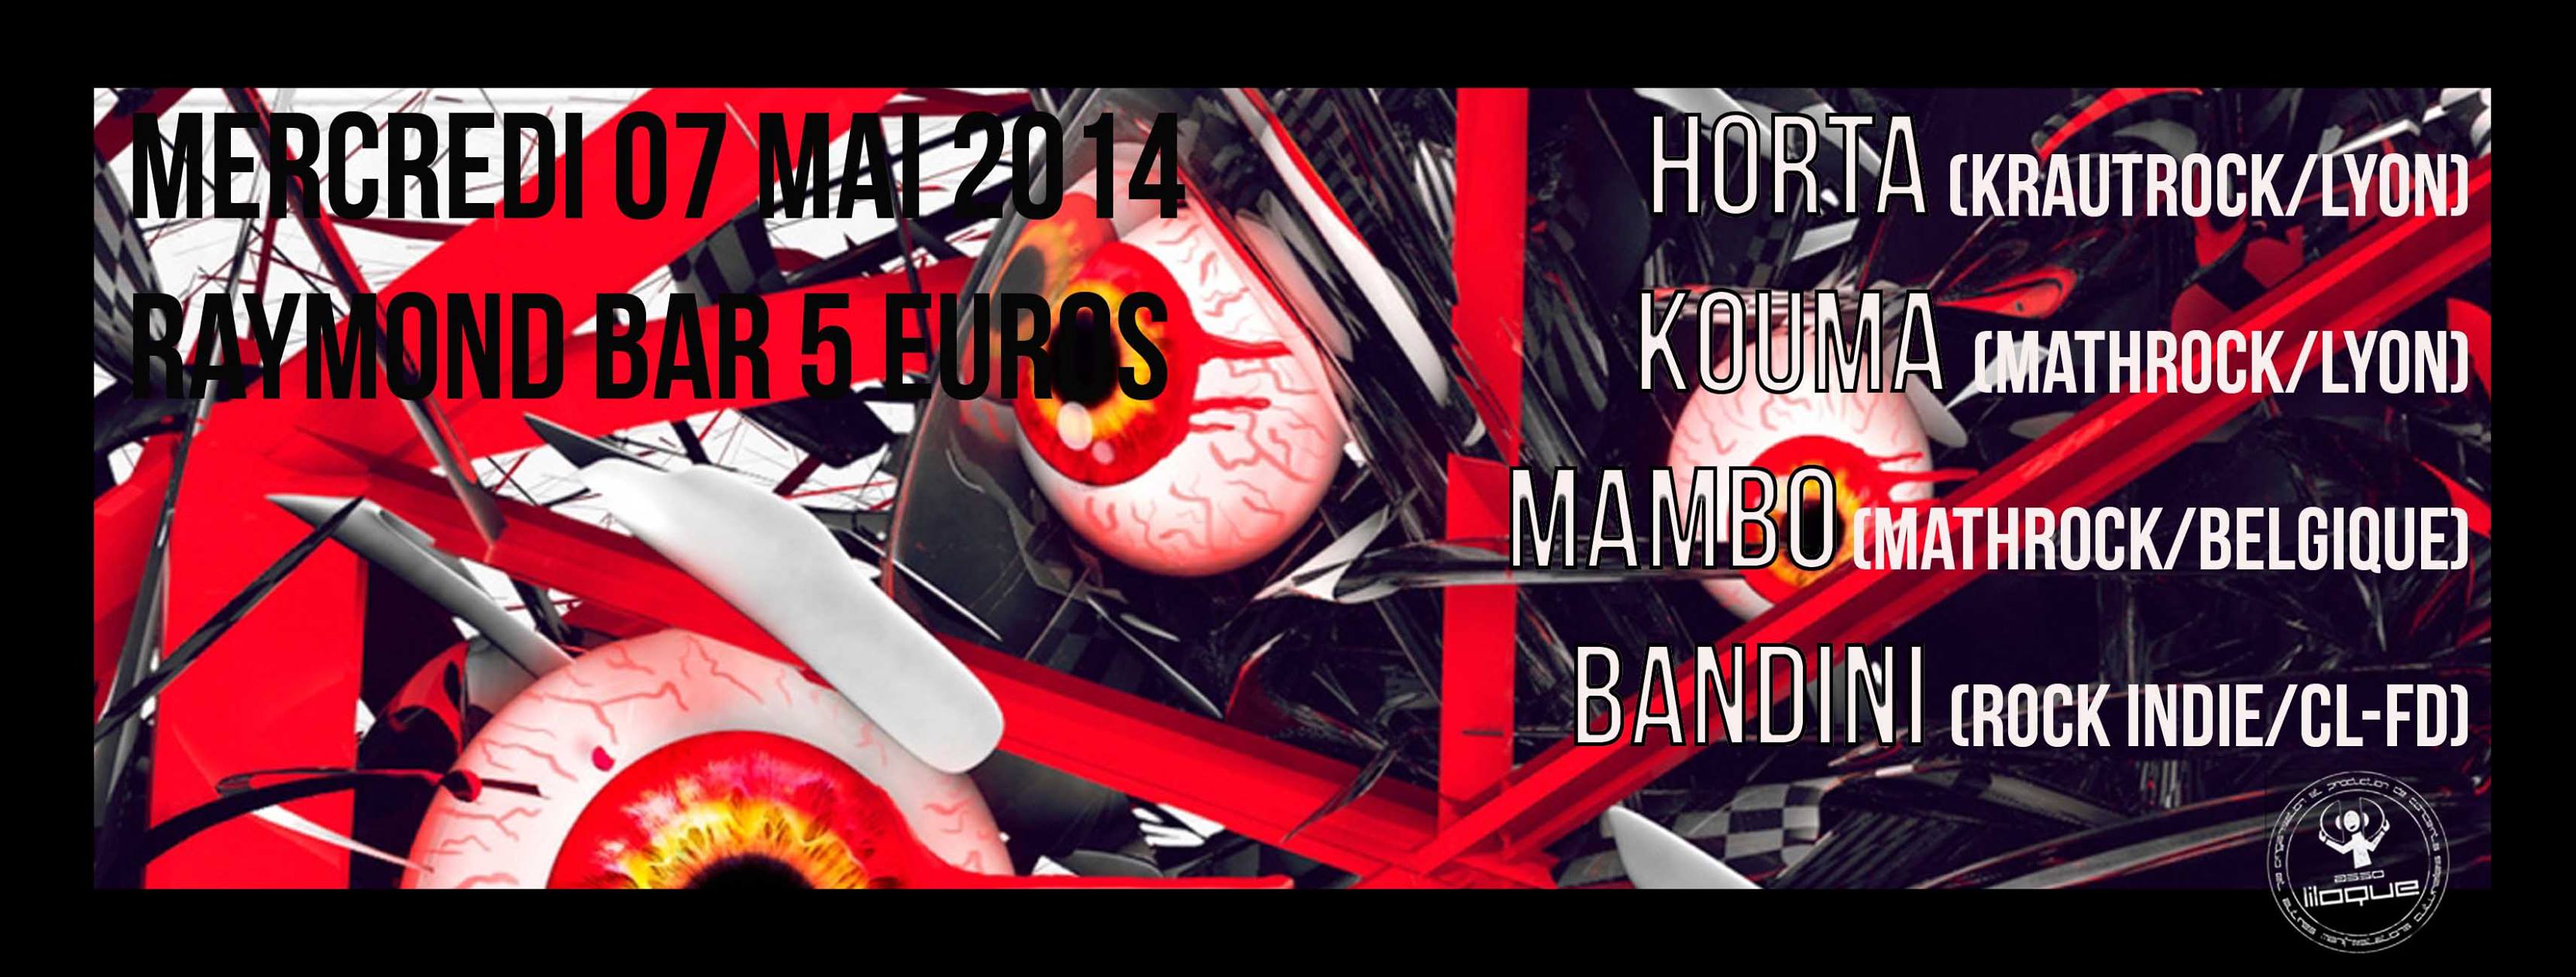 Kouma + Horta + Manbo + Bandini